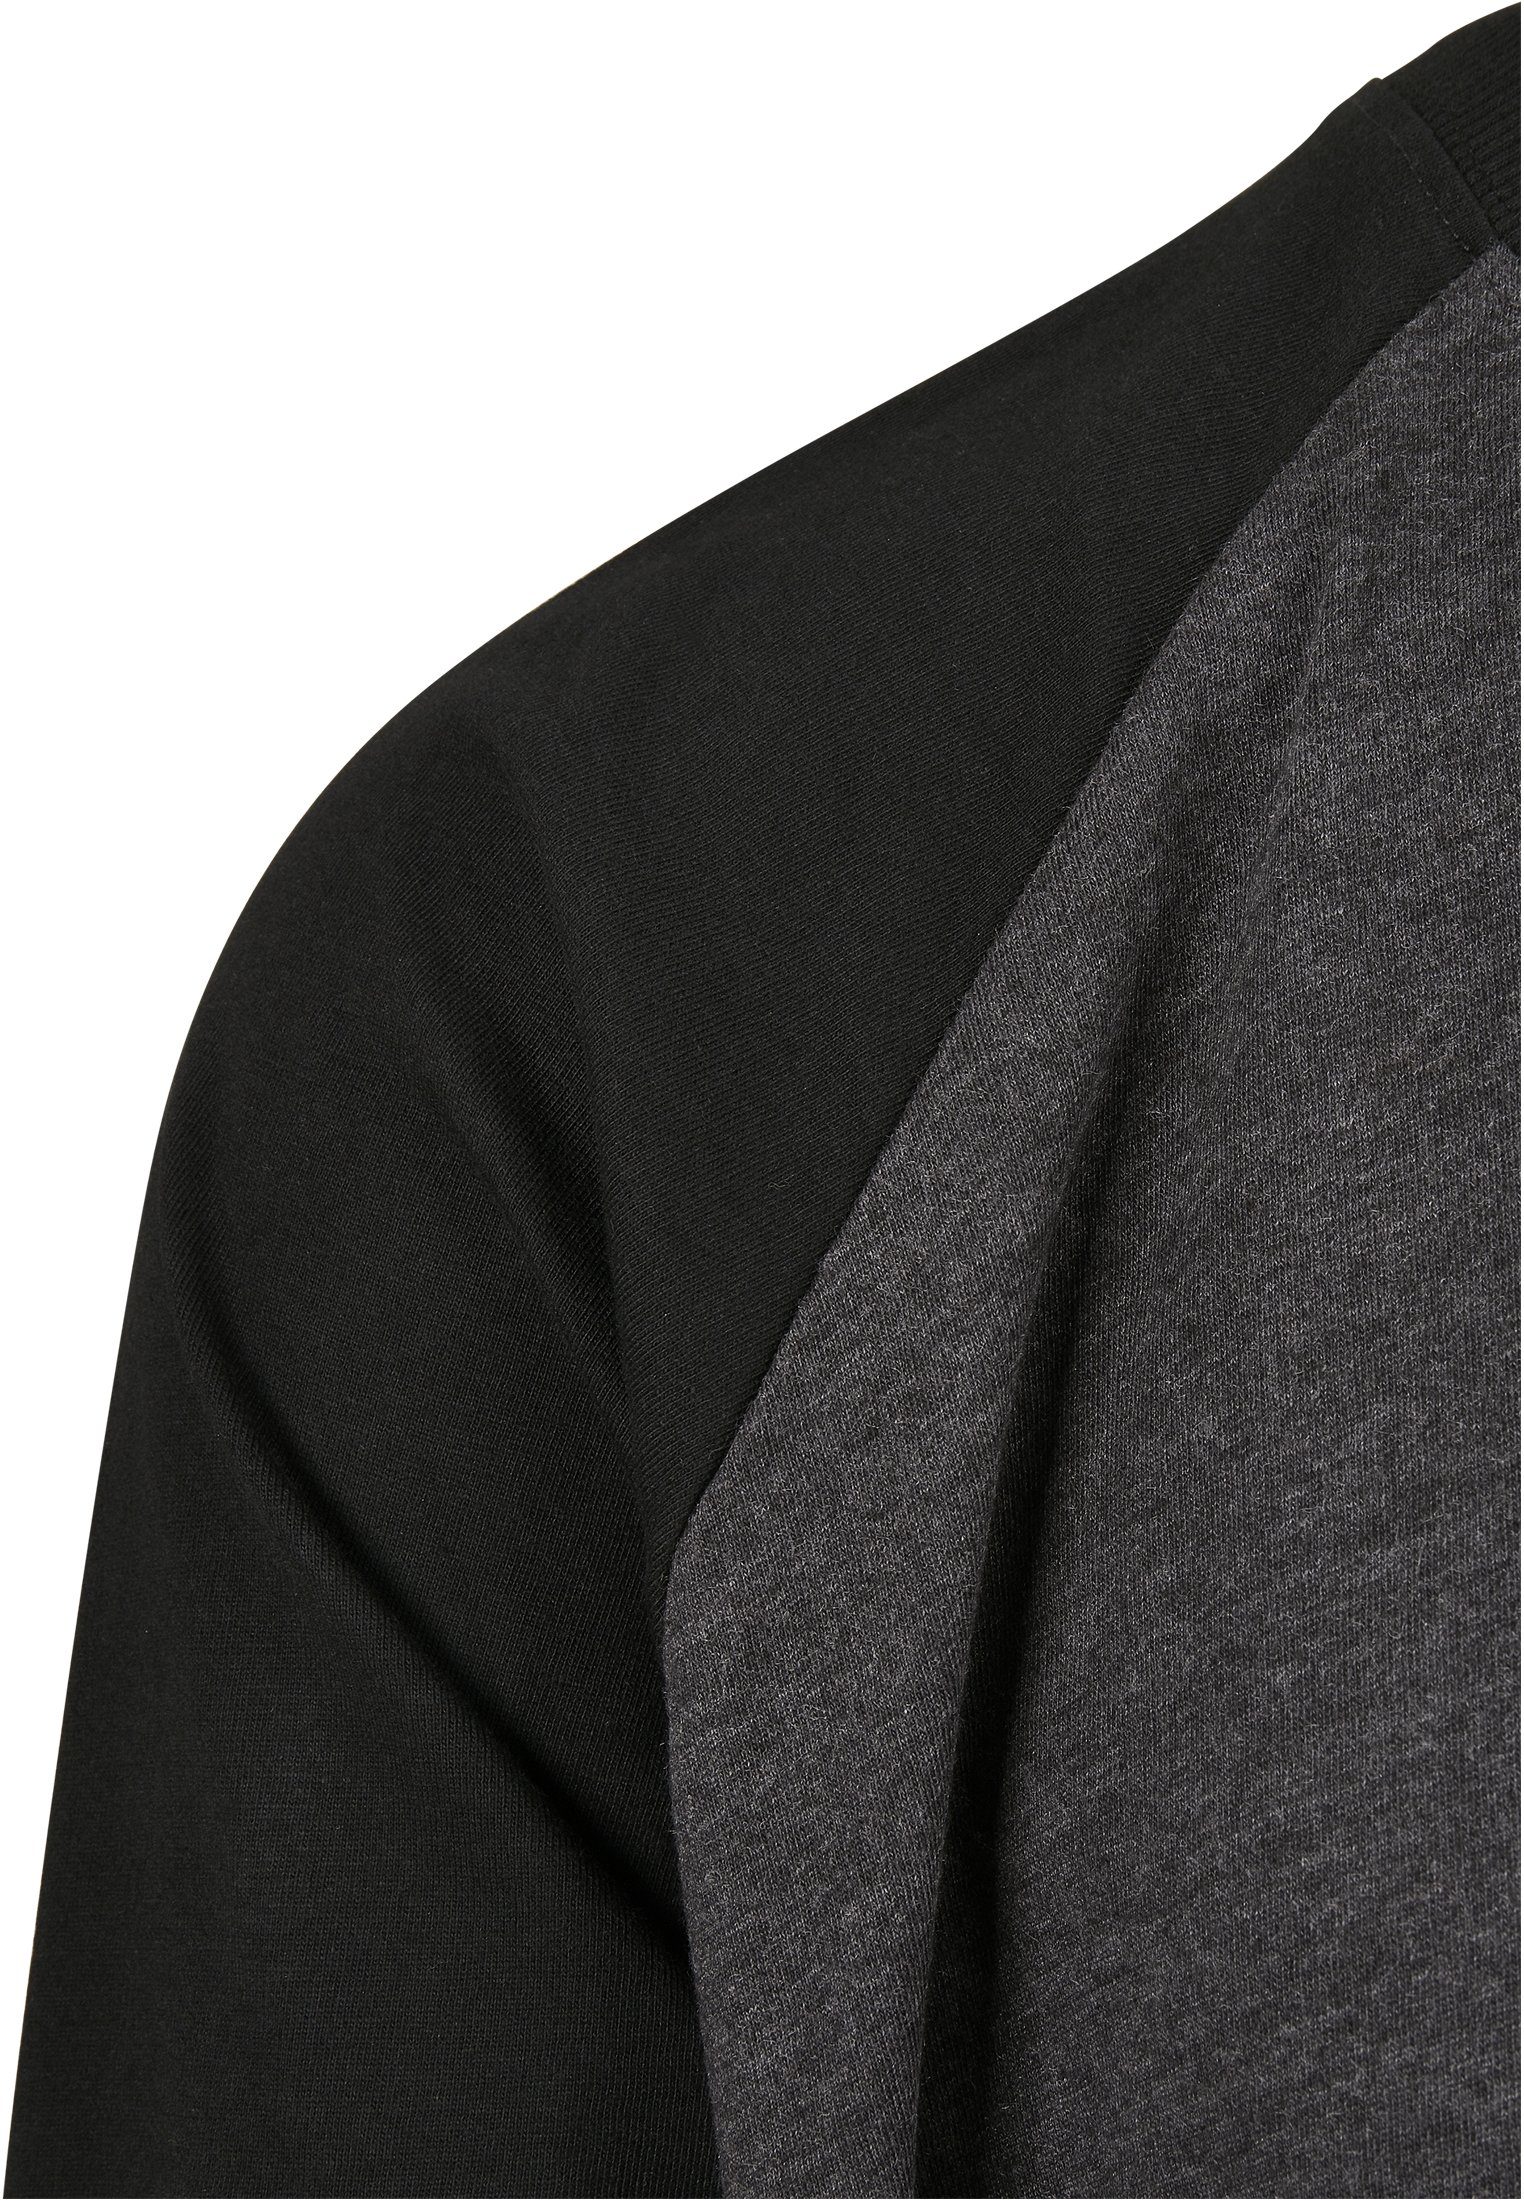 charcoal/black Contrast Raglan (1-tlg) LS URBAN Männer CLASSICS T-Shirt